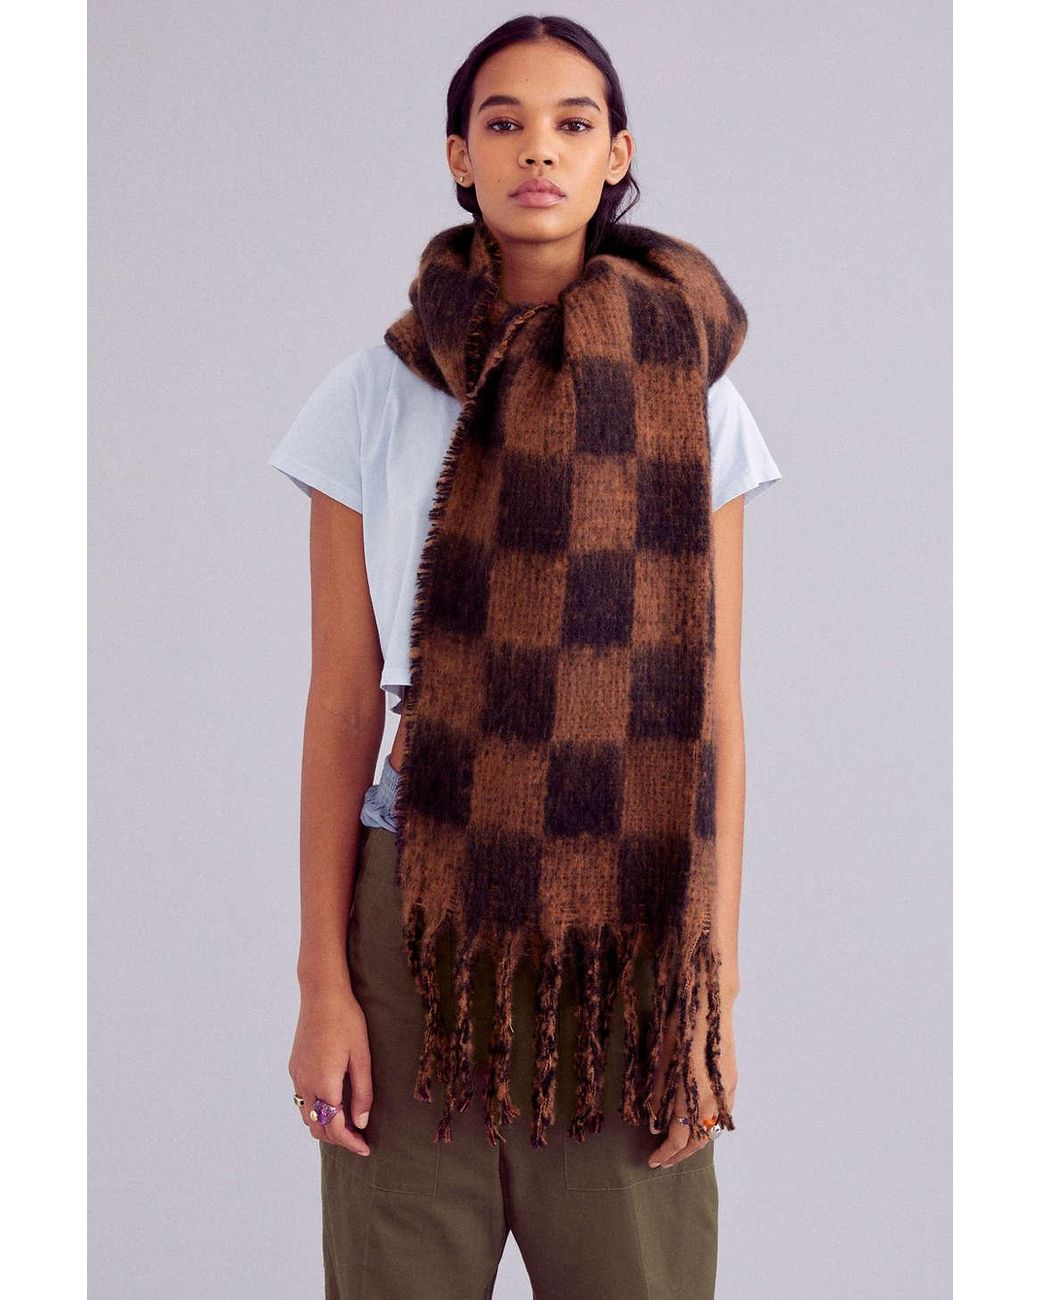 osfa $28 BNWT urban outfitters fashion stars scarf 